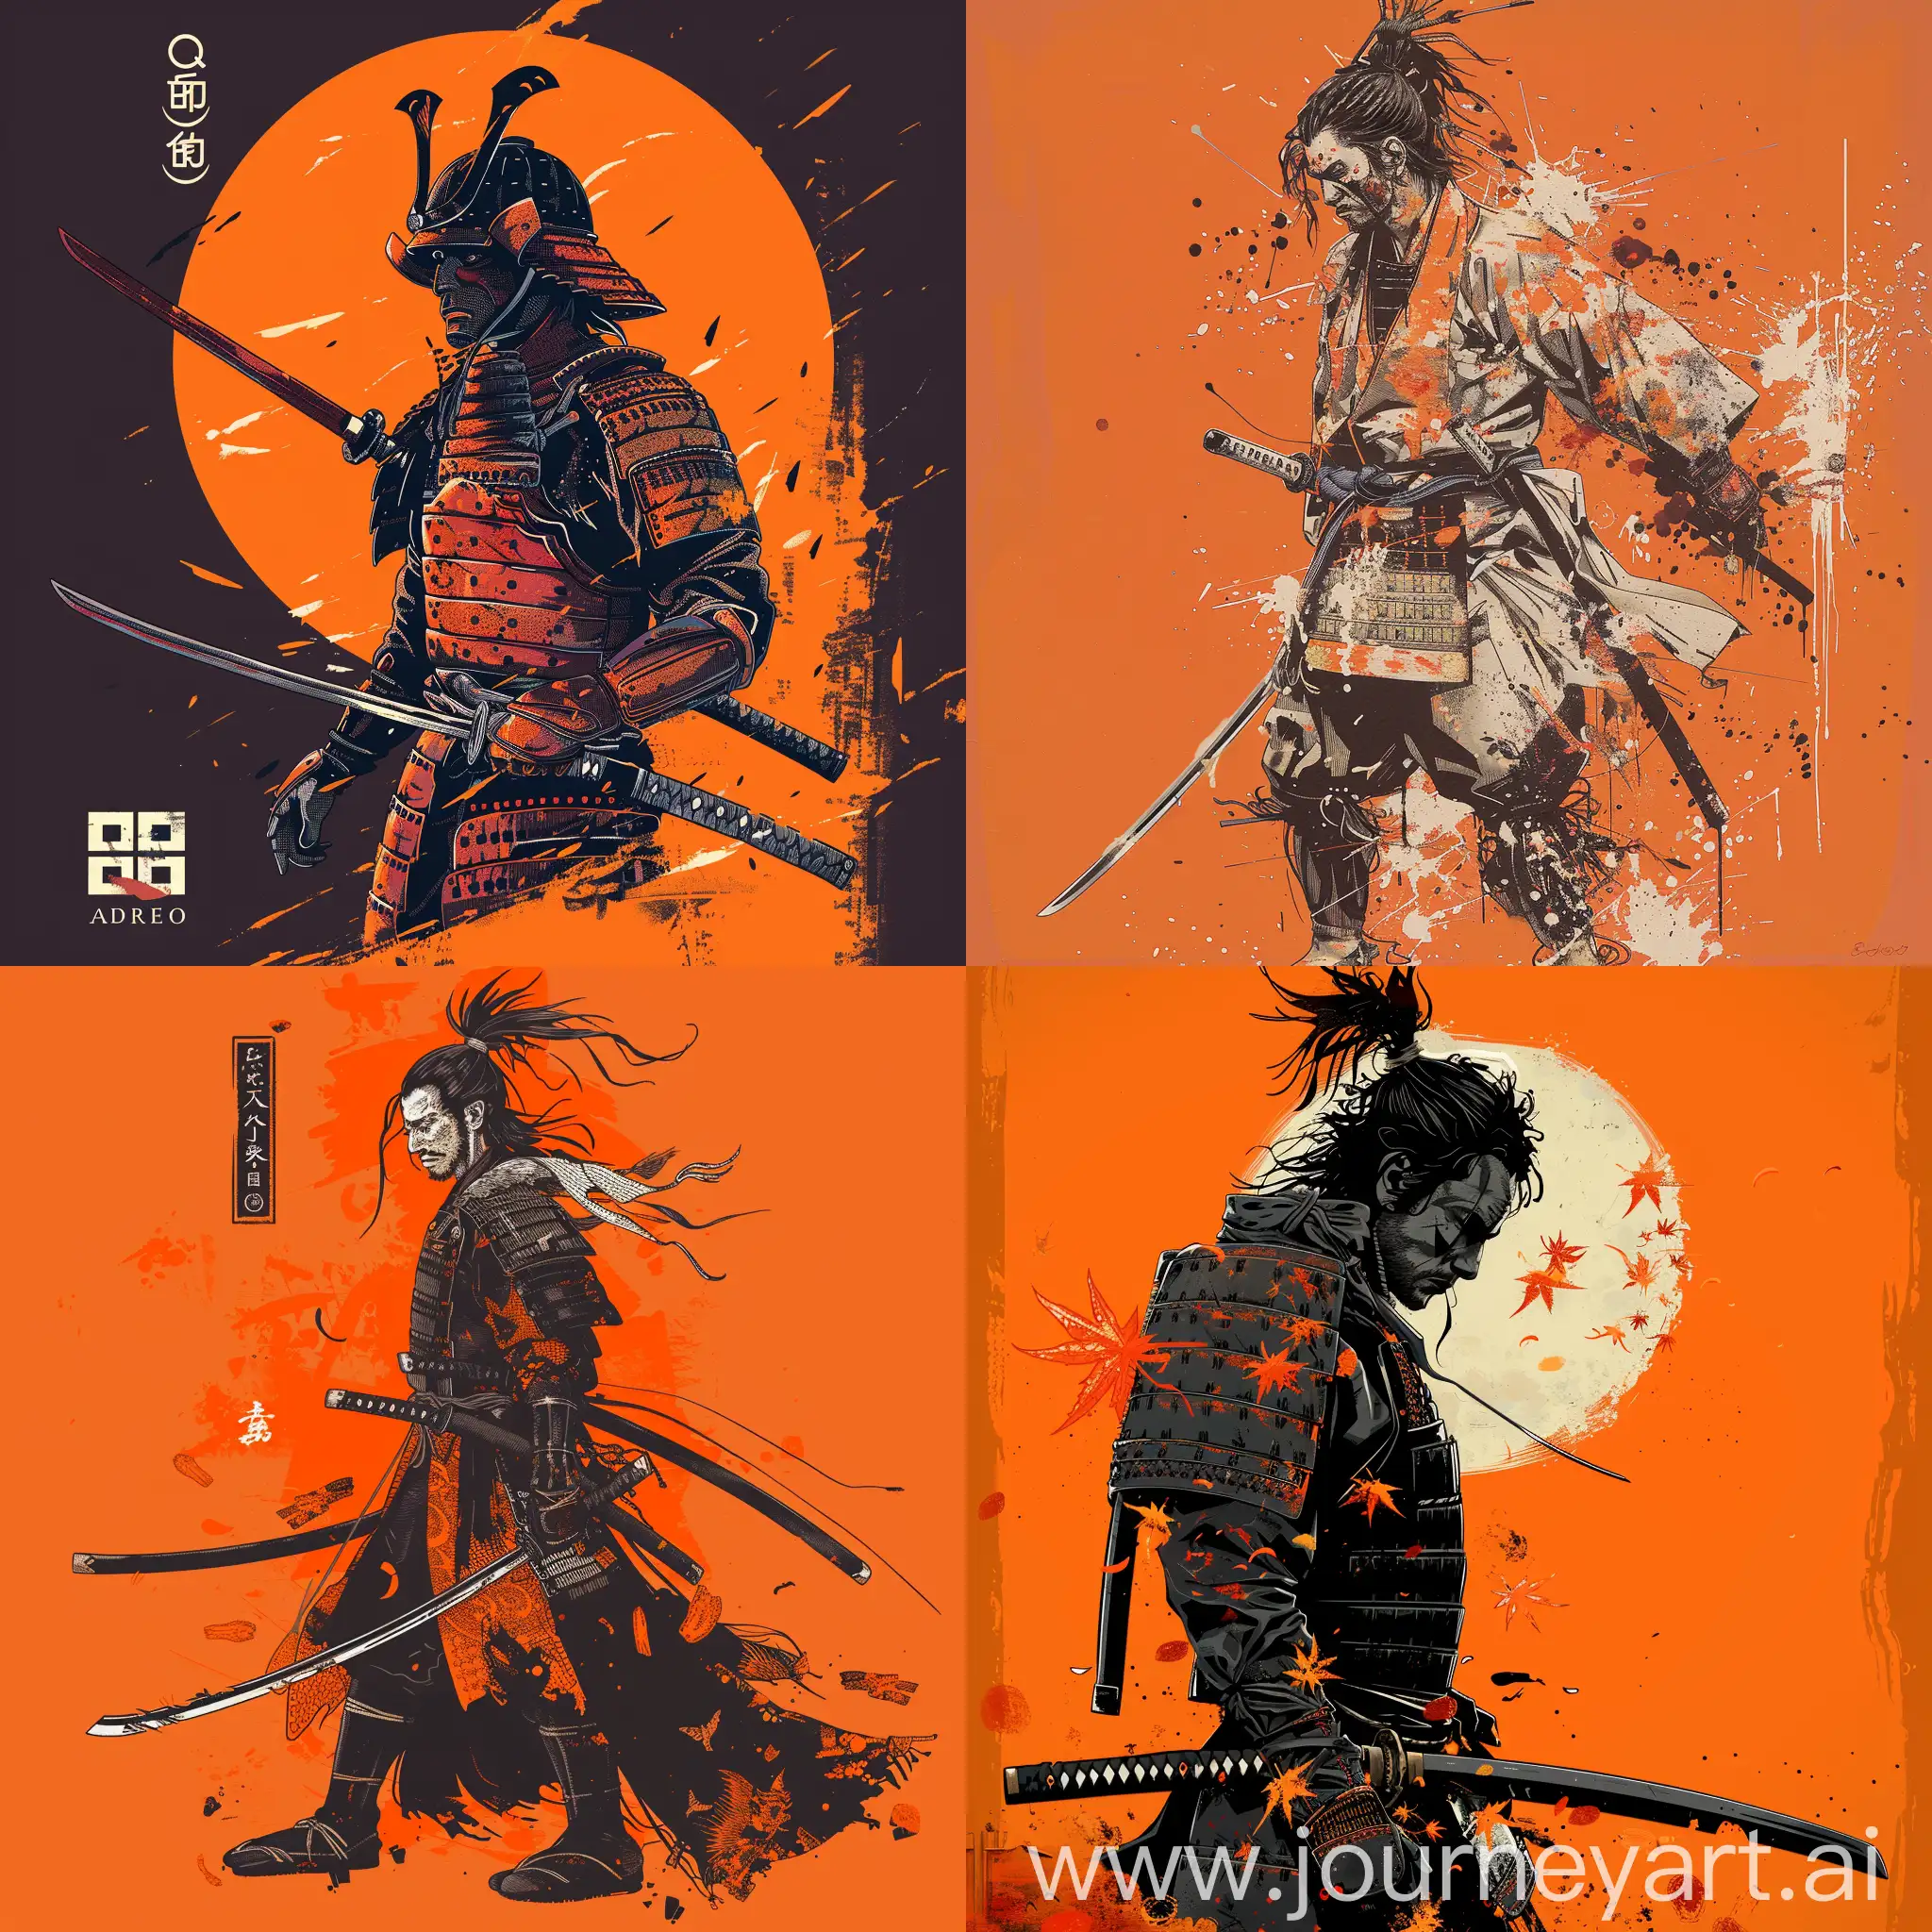 Qizen-Samurai-Warrior-Against-Vibrant-Orange-Background